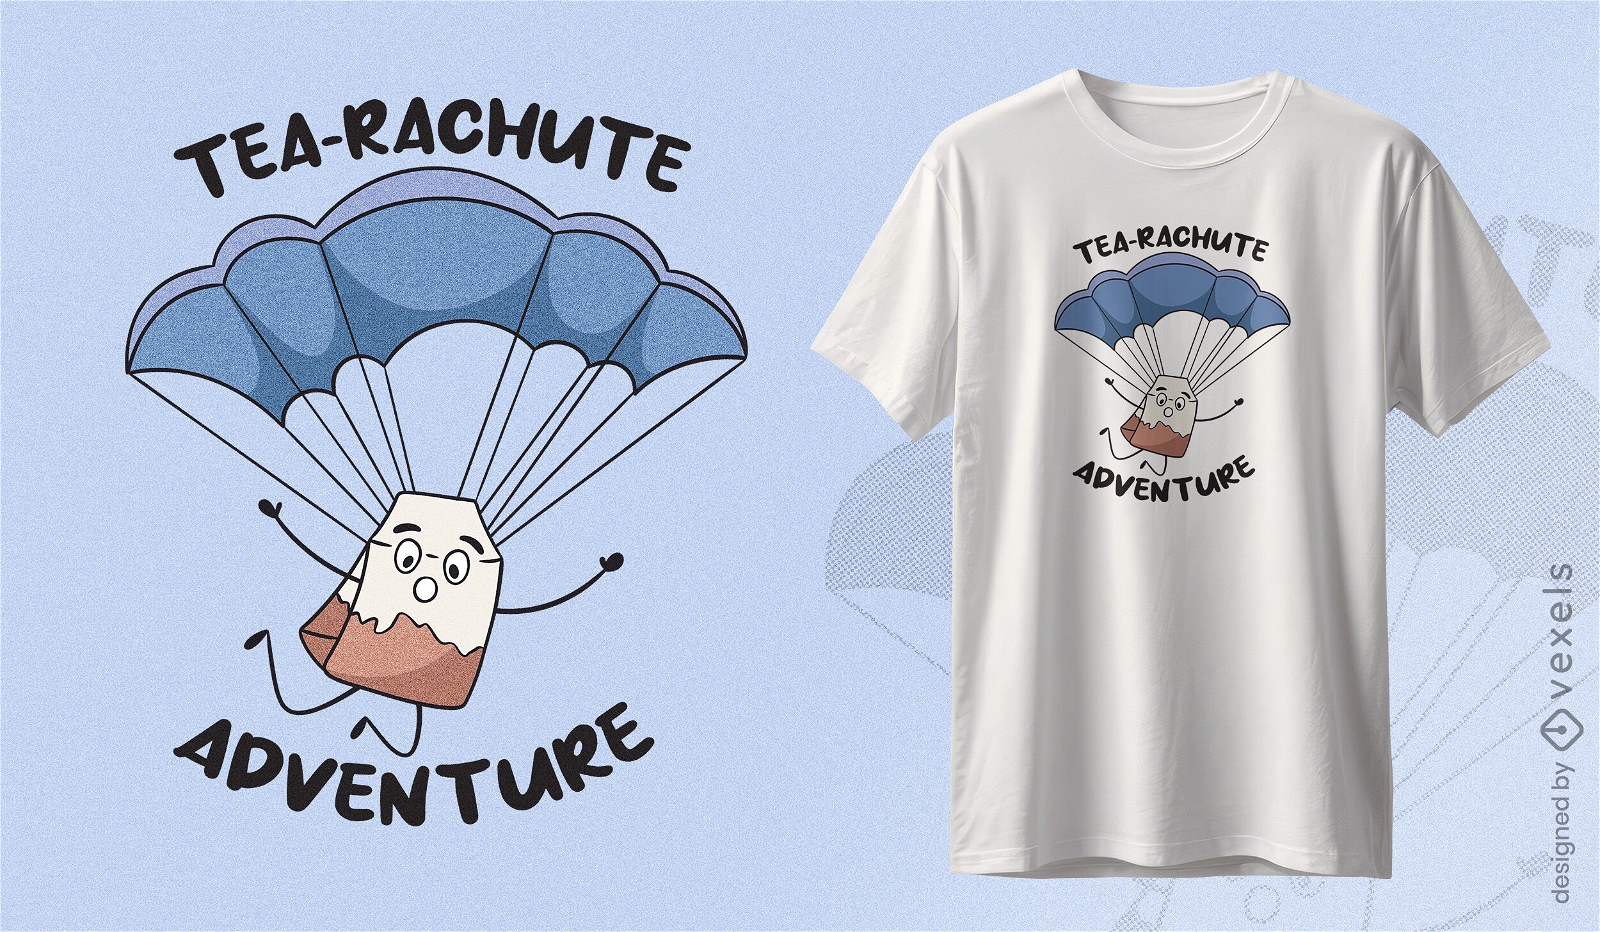 Dise?o de camiseta de aventura en paraca?das de t?.